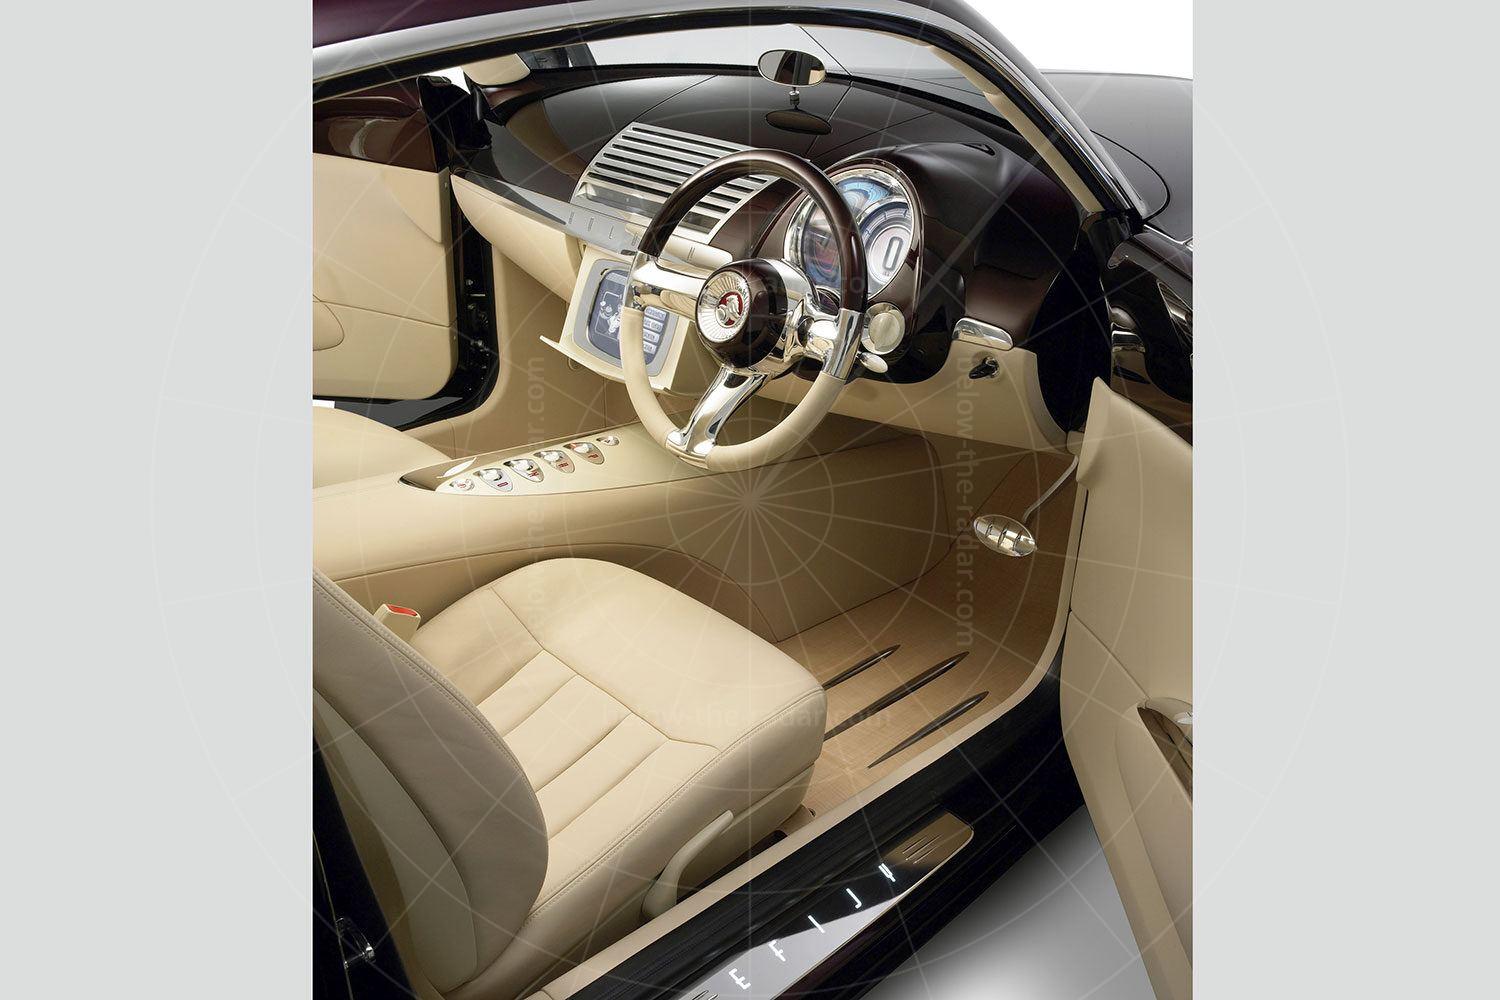 Holden Efijy interior Pic: Holden | Holden Efijy interior